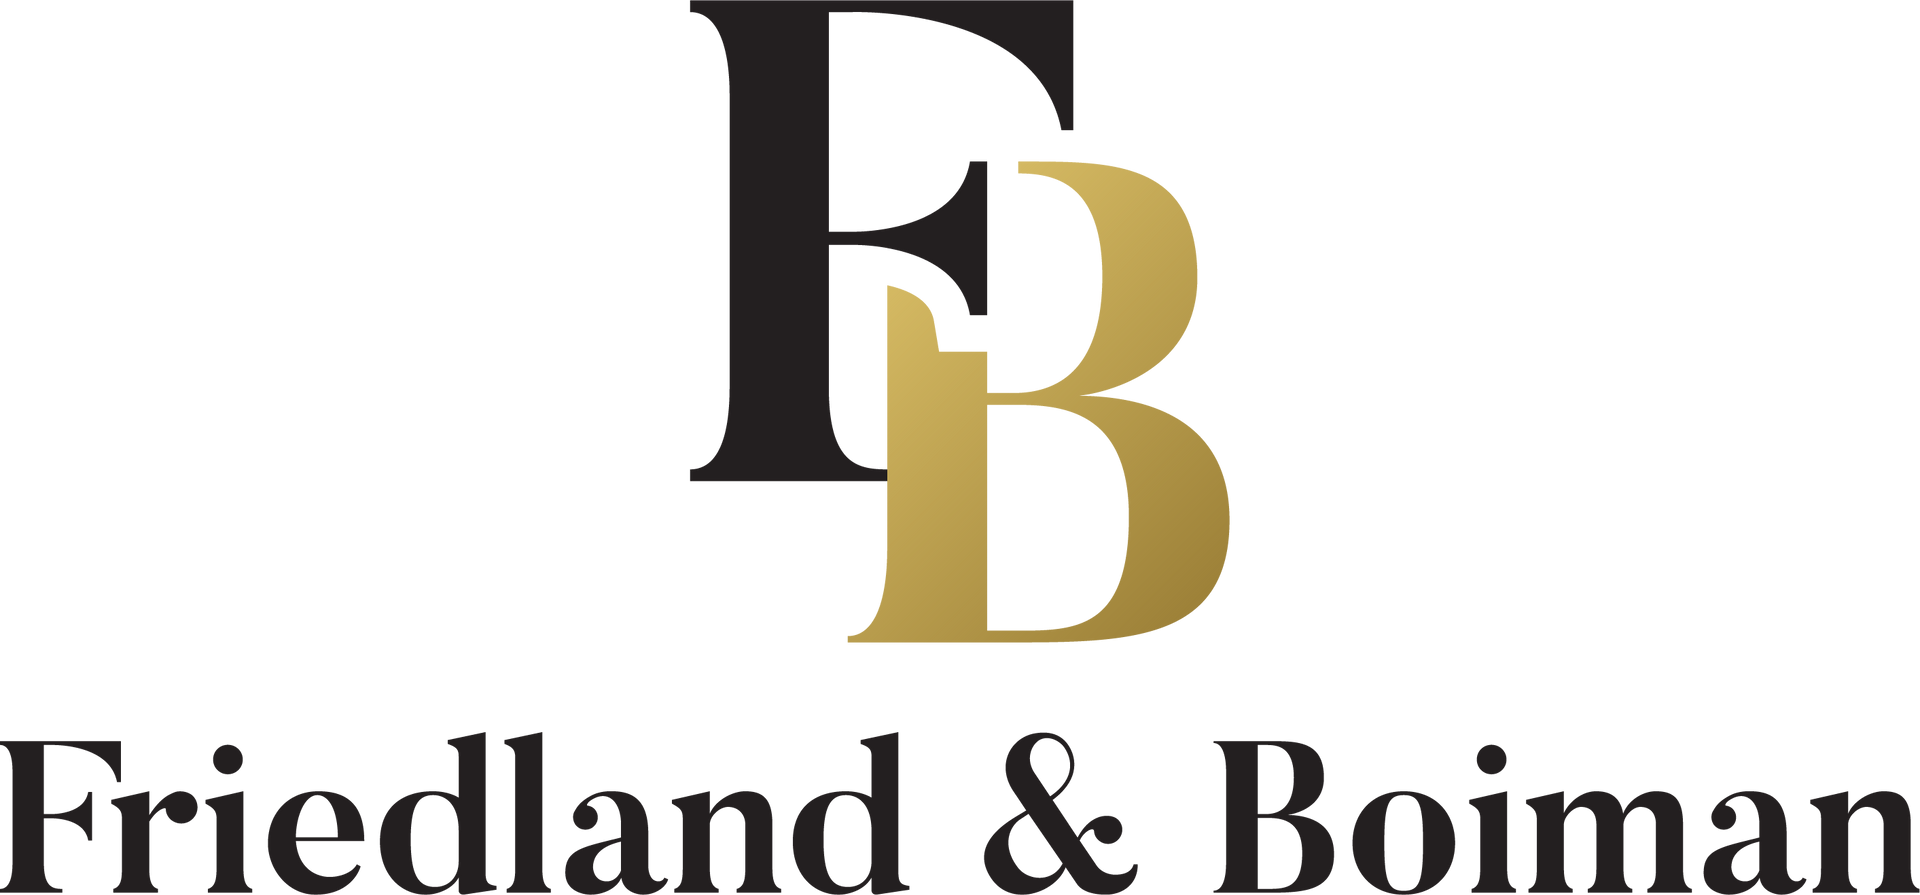 Friedland & Boiman LLC